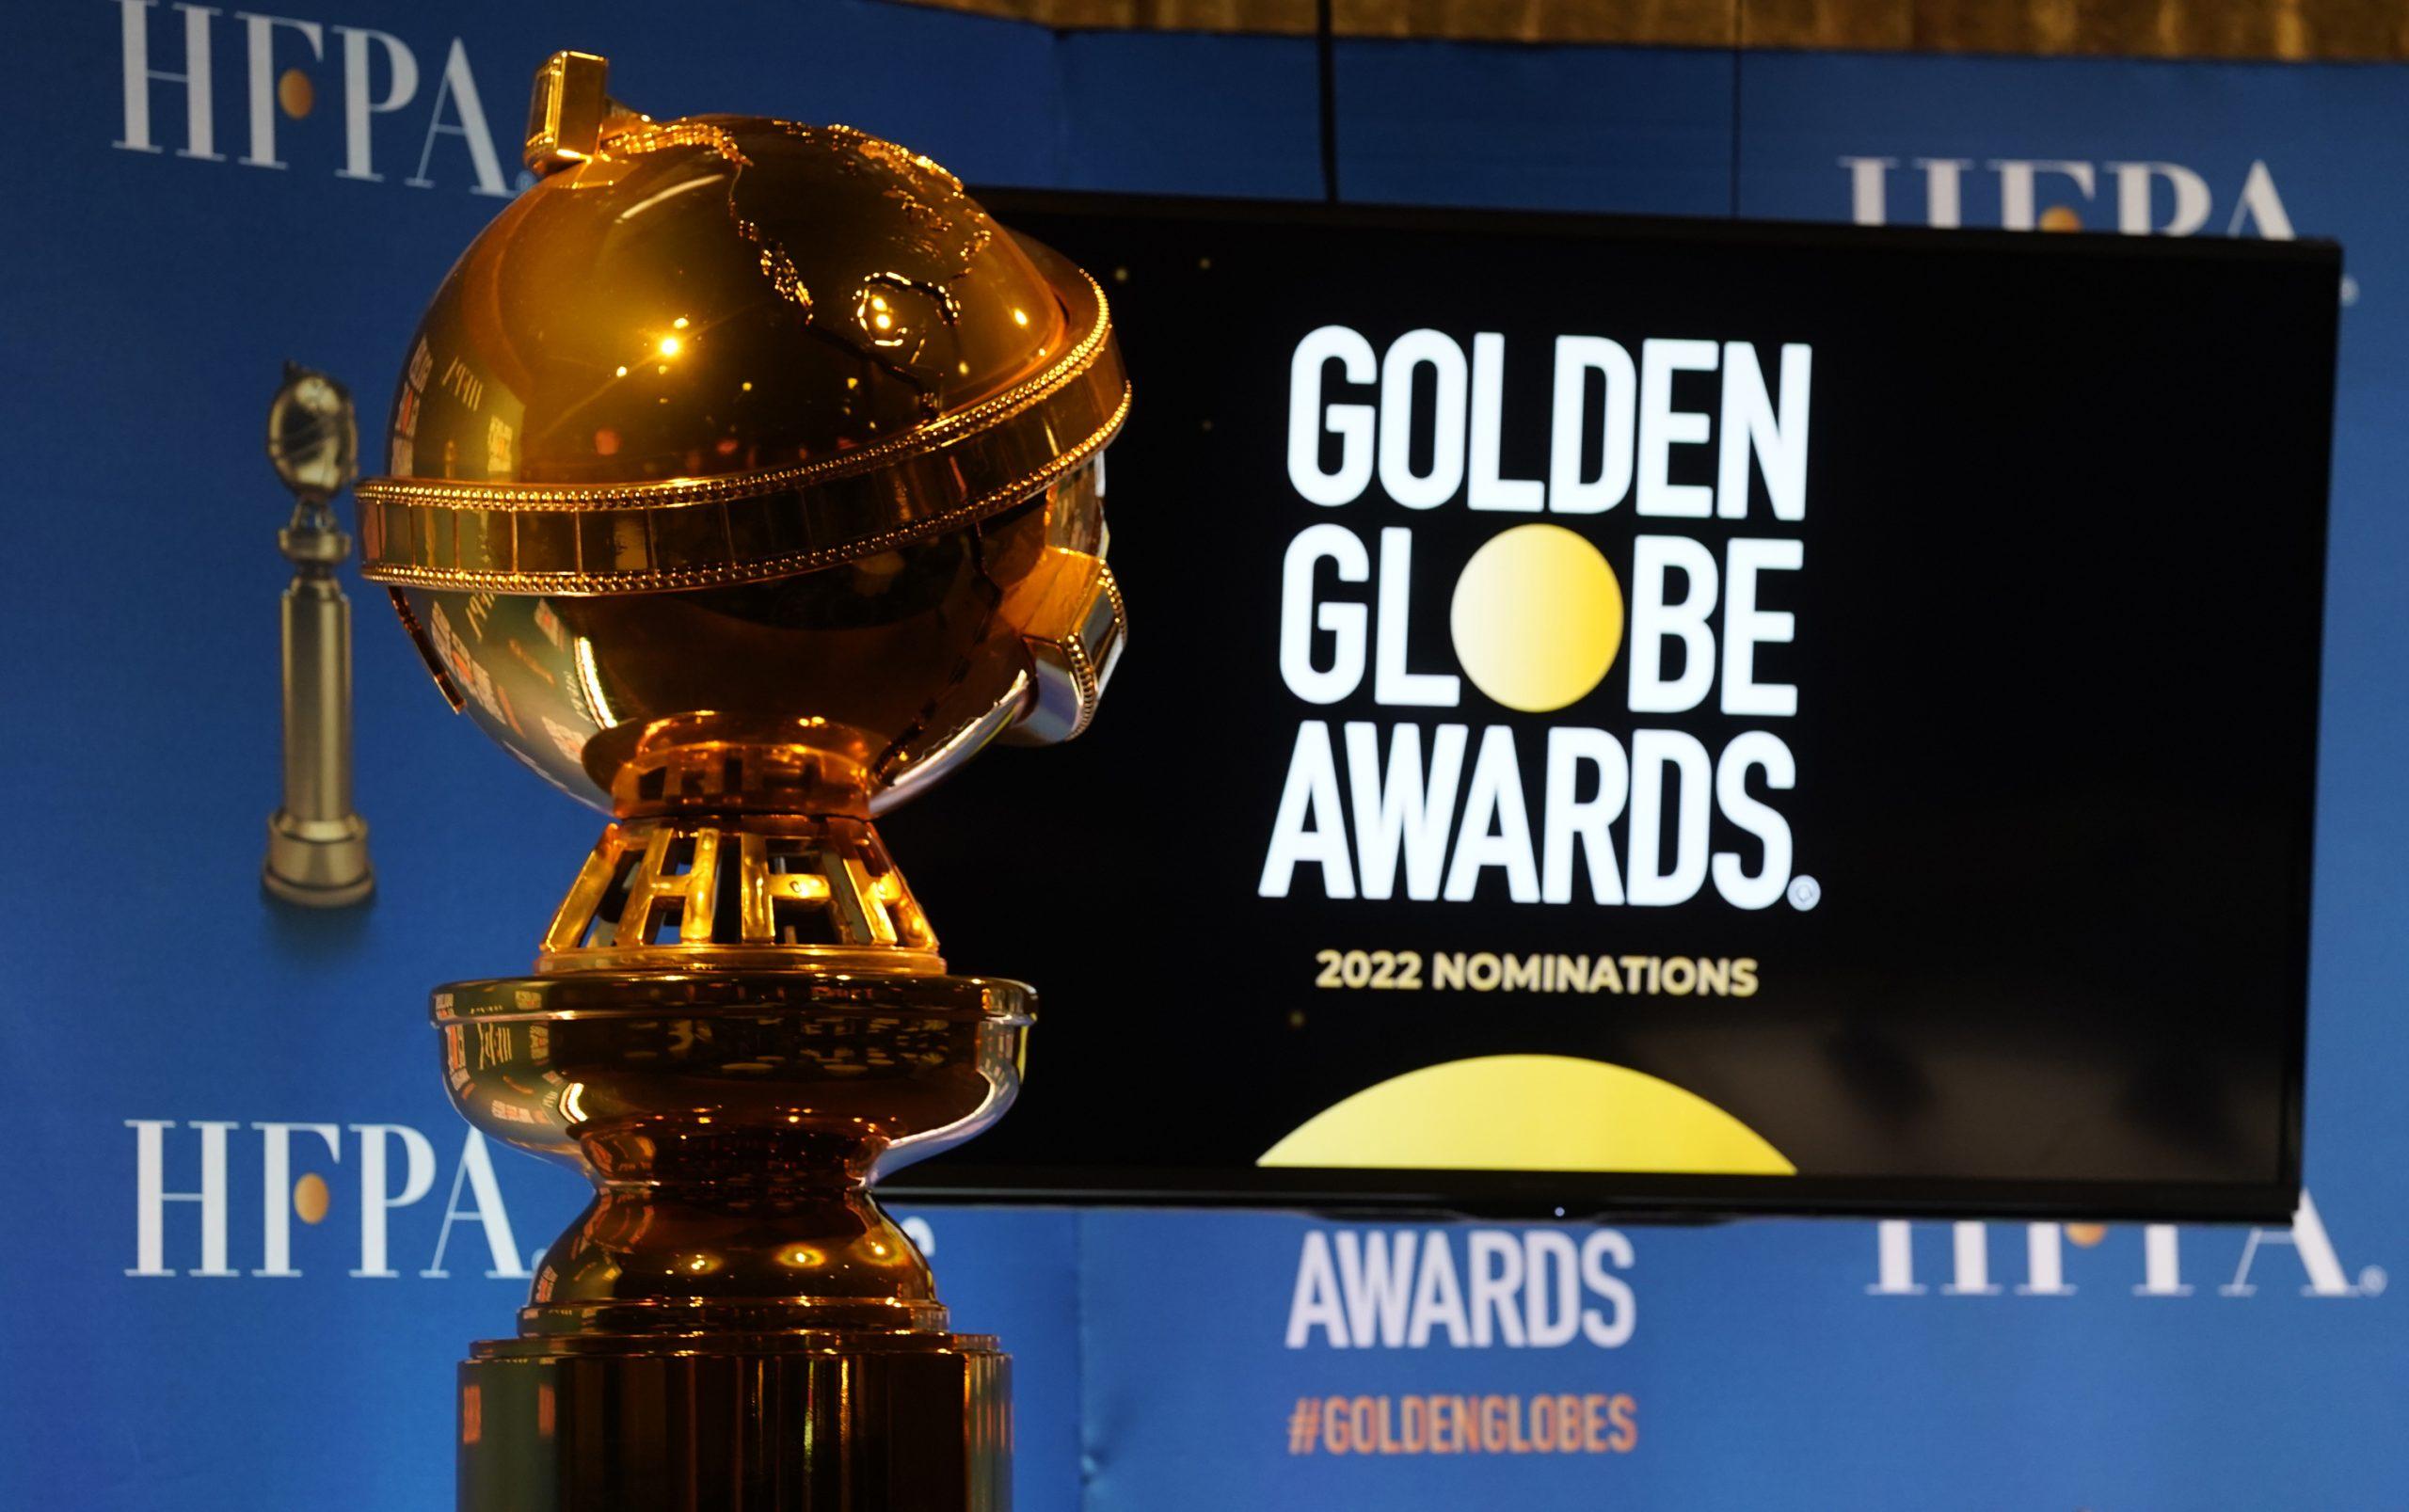 Golden Globe Awards 2022: Golden Globe Awards Announced